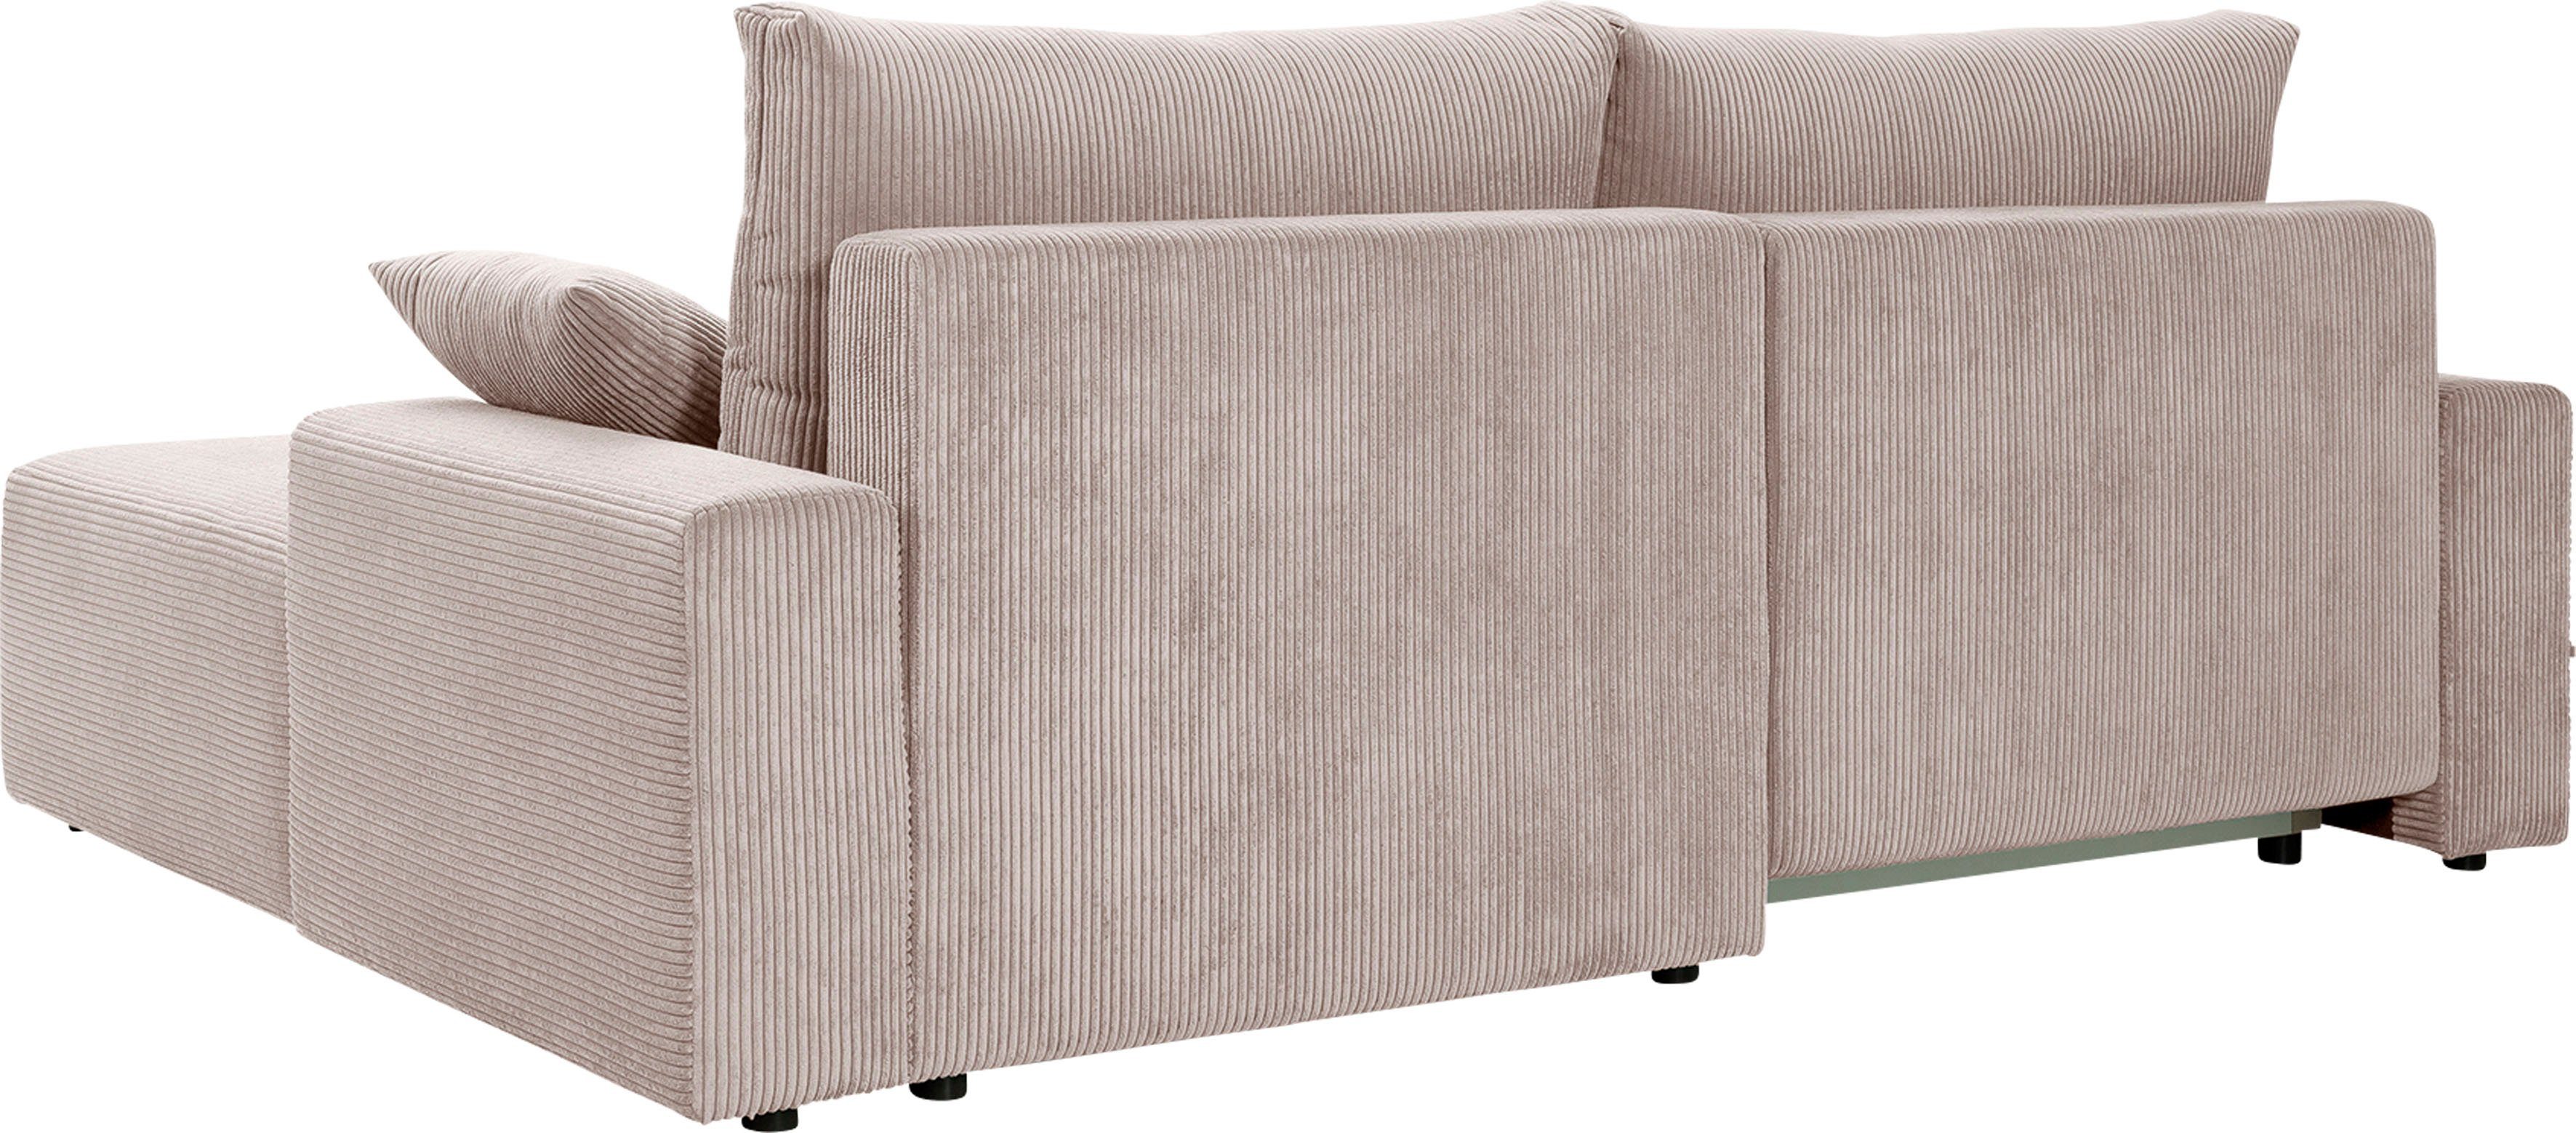 Cord-Farben Orinoko, in Ecksofa verschiedenen Bettkasten Bettfunktion exxpo sofa inklusive biege - und fashion